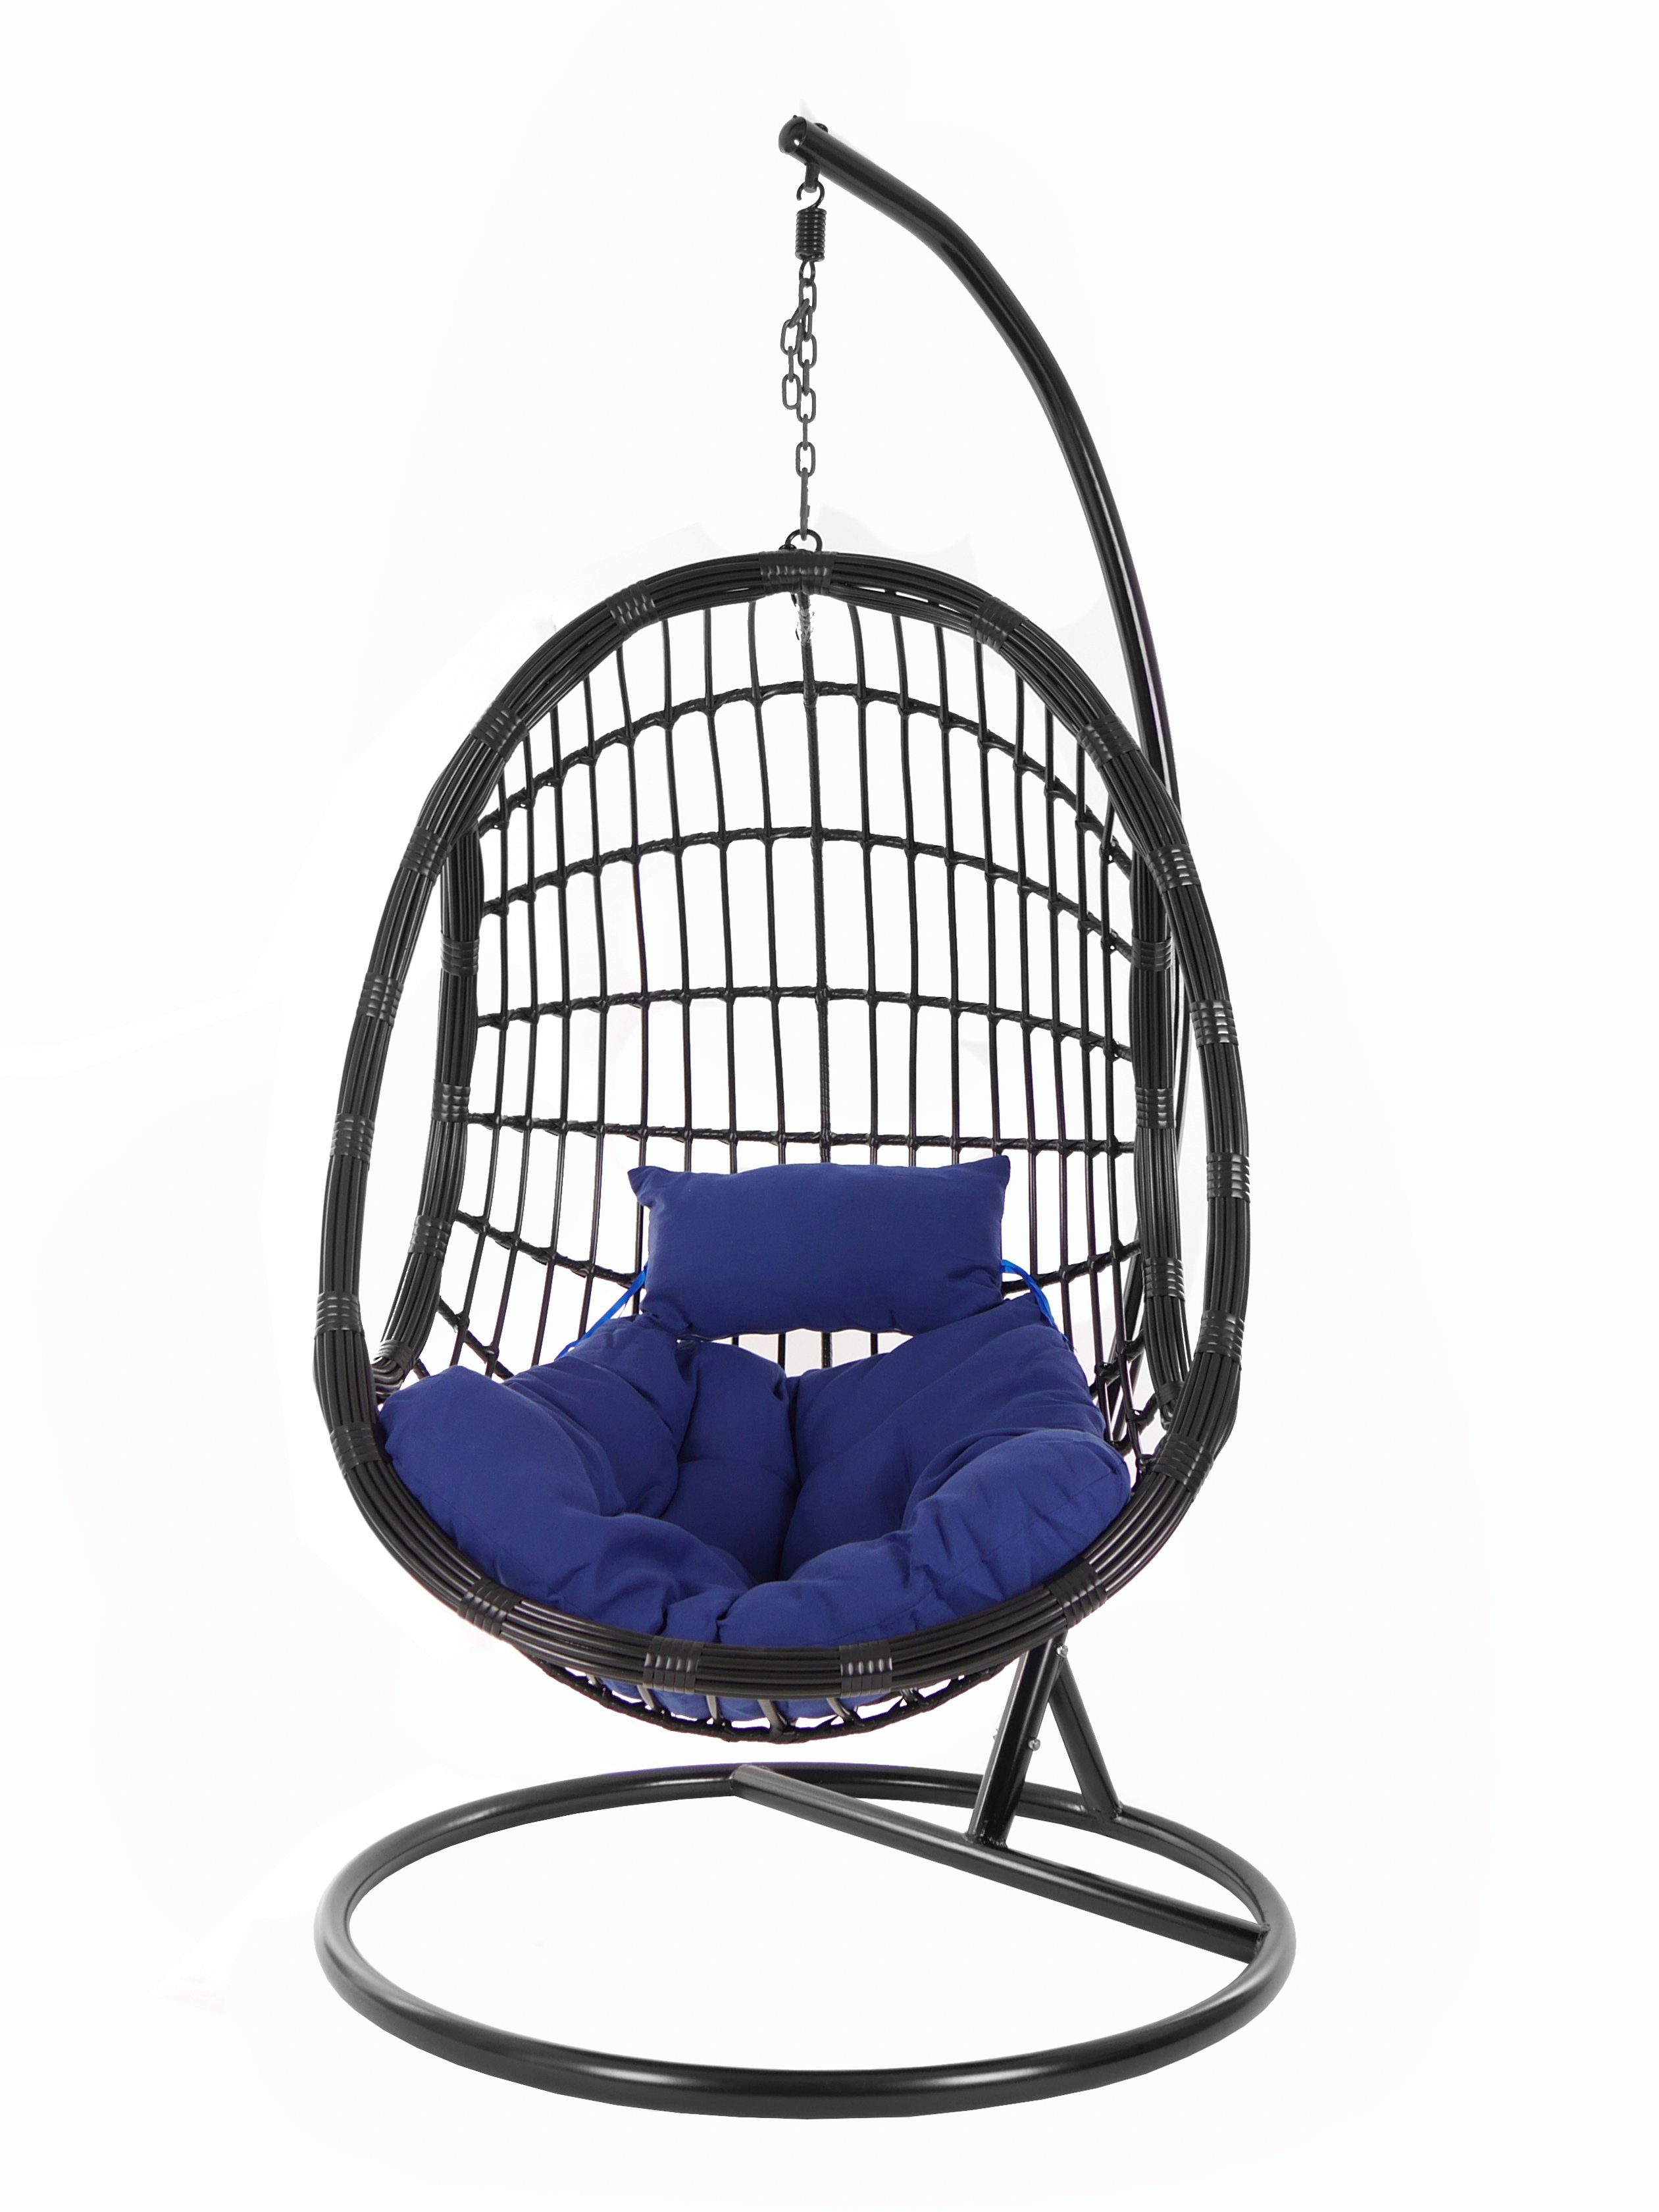 KIDEO Hängesessel PALMANOVA black, Swing Hängesessel edles und Chair, mit Gestell Loungemöbel, Kissen, schwarz, dunkelblau navy) (5900 Schwebesessel, Design